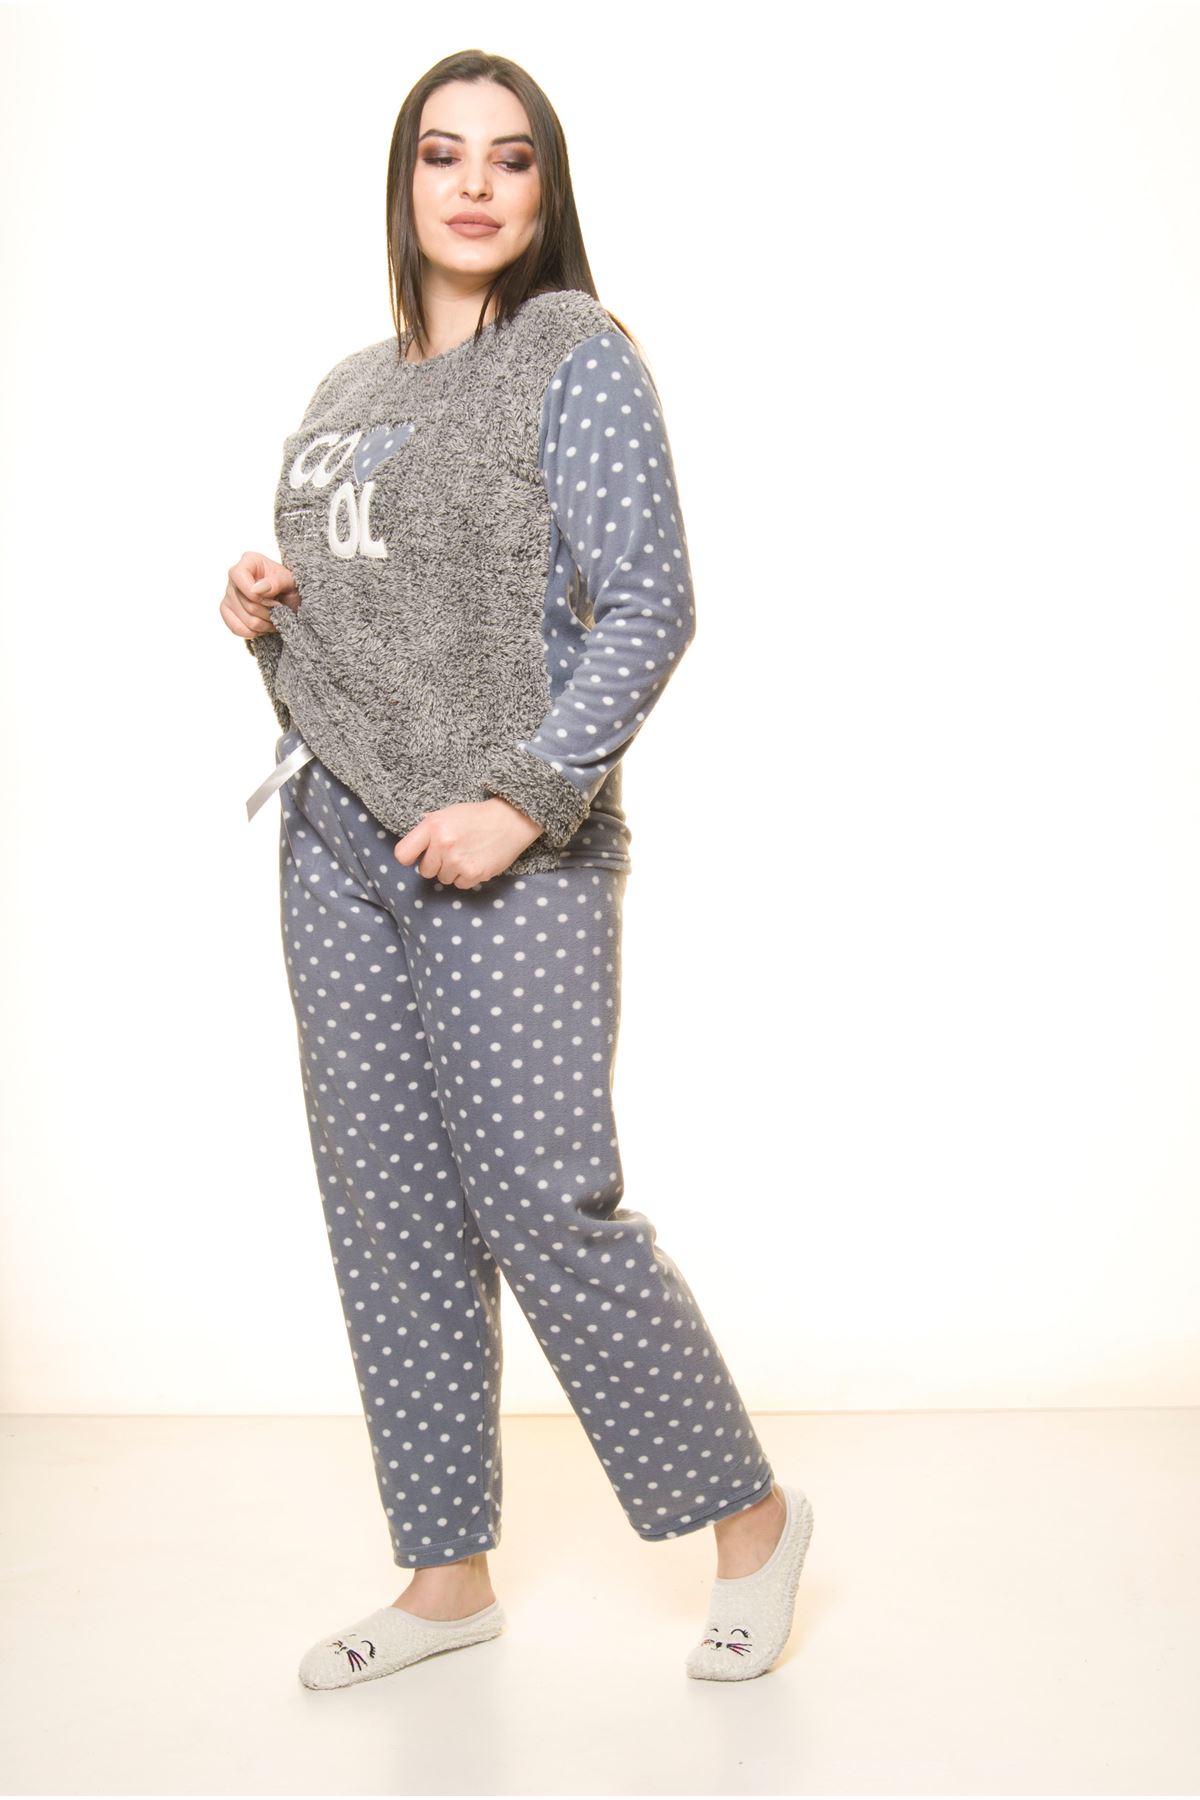 Polar Peluş Kışlık Pijama Takımı 32C-1514